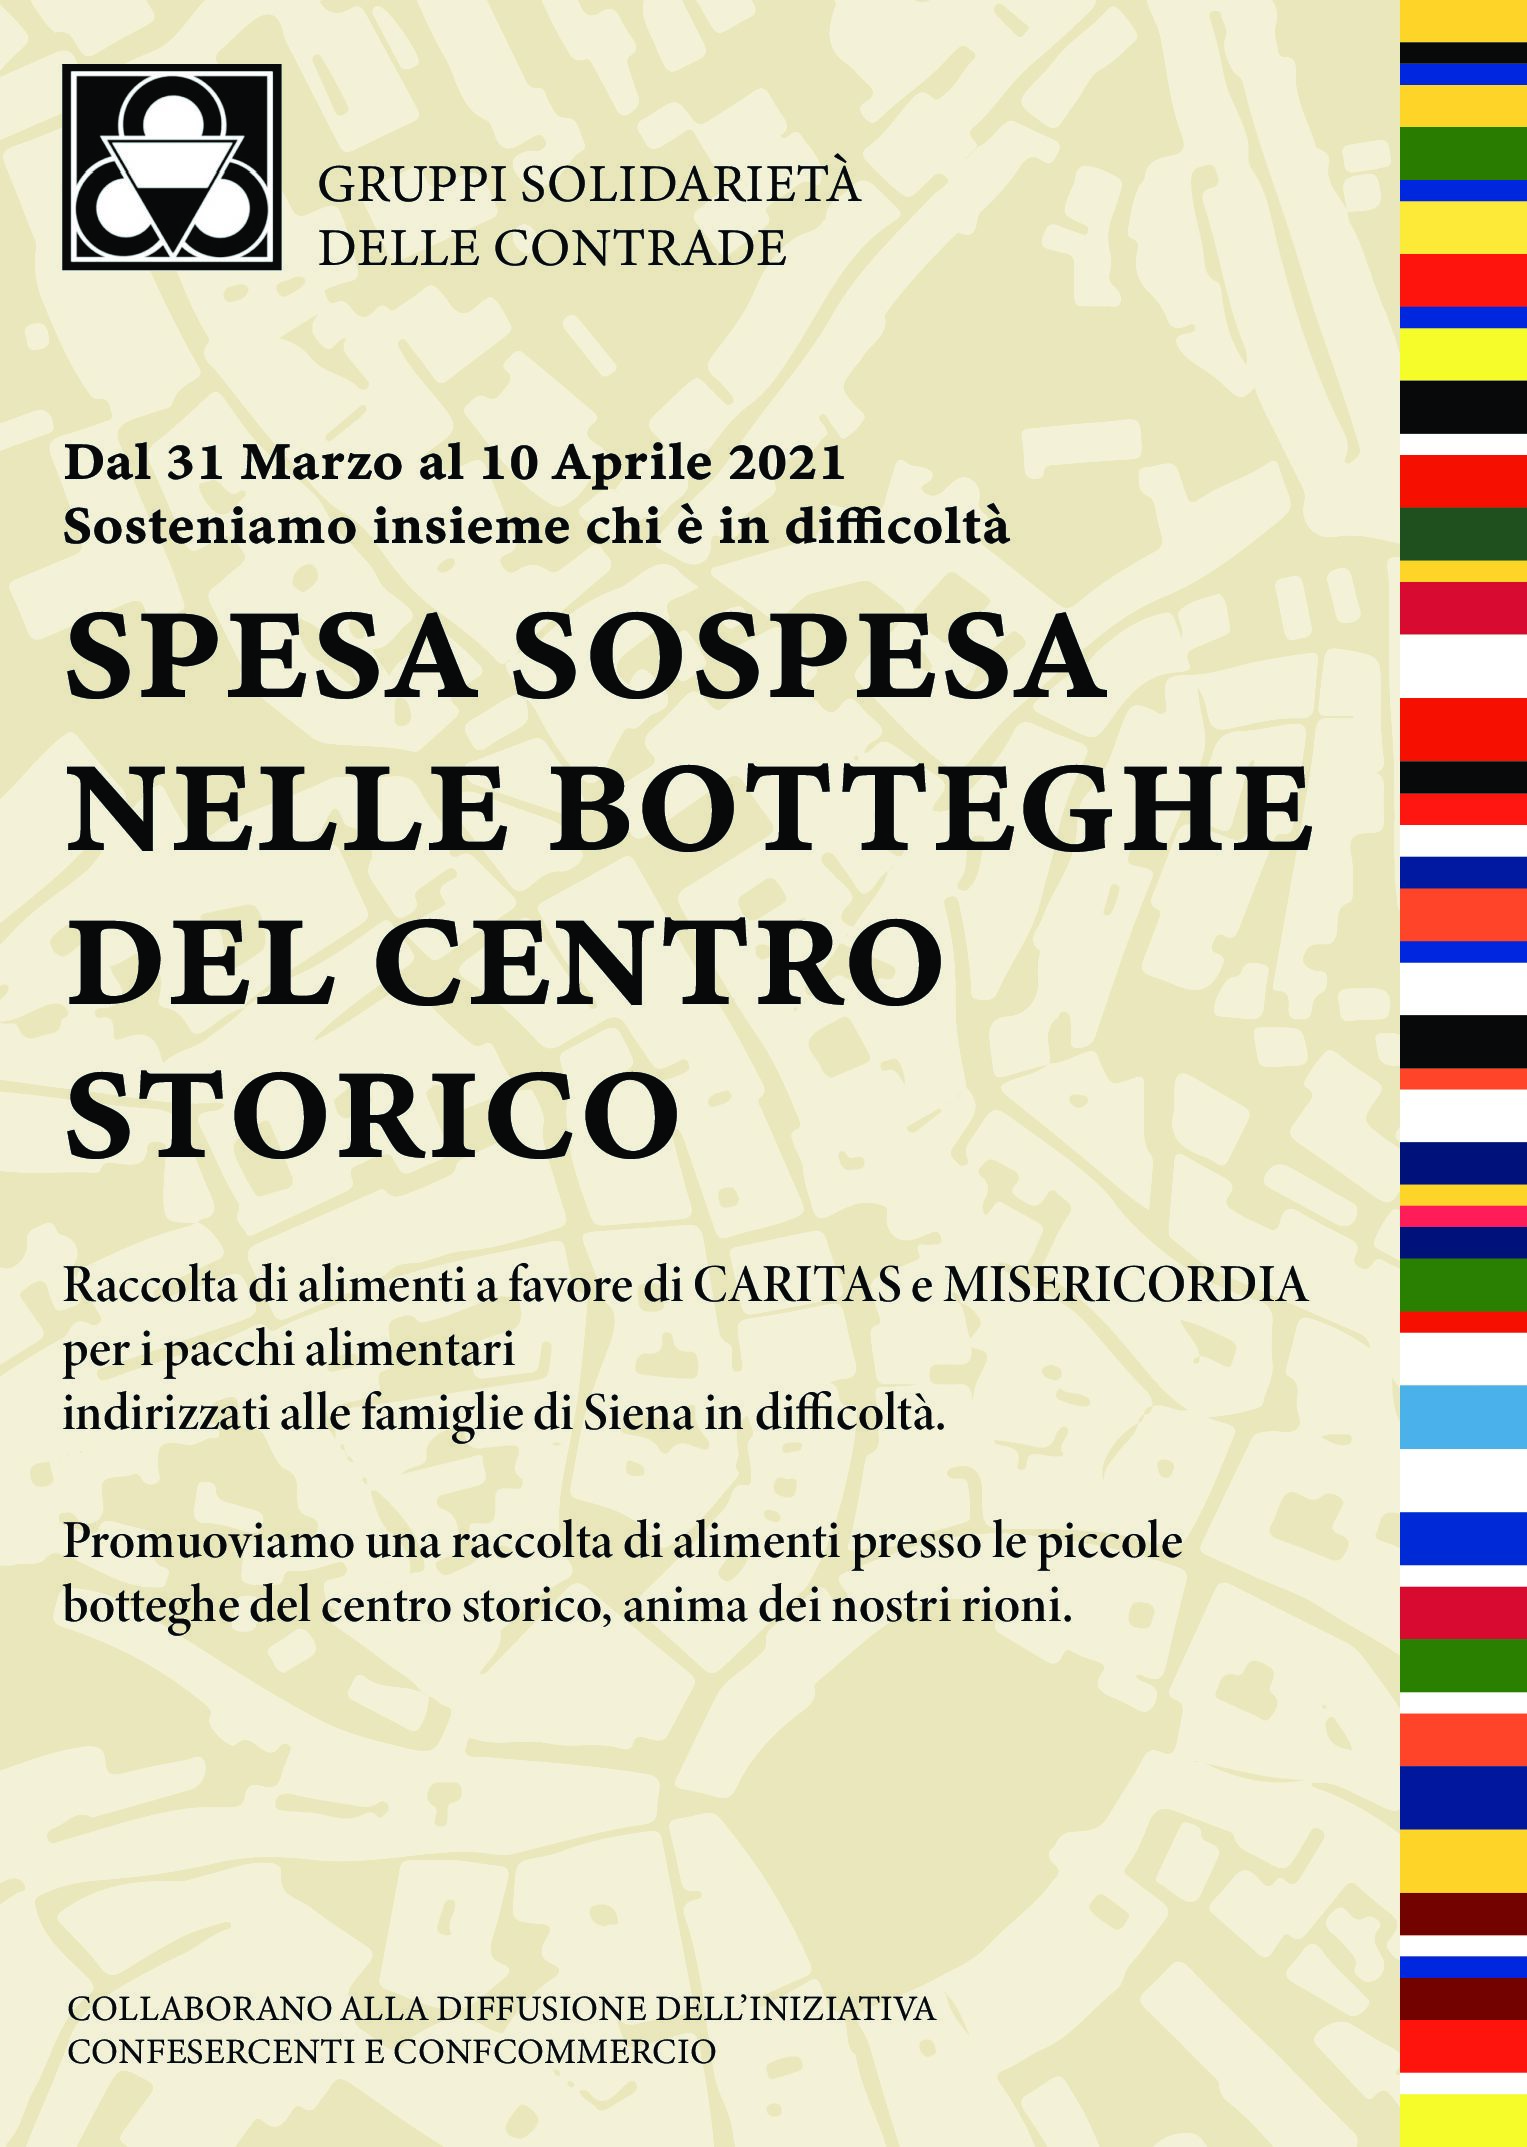 A Siena “spesa sospesa” nelle botteghe del centro storico